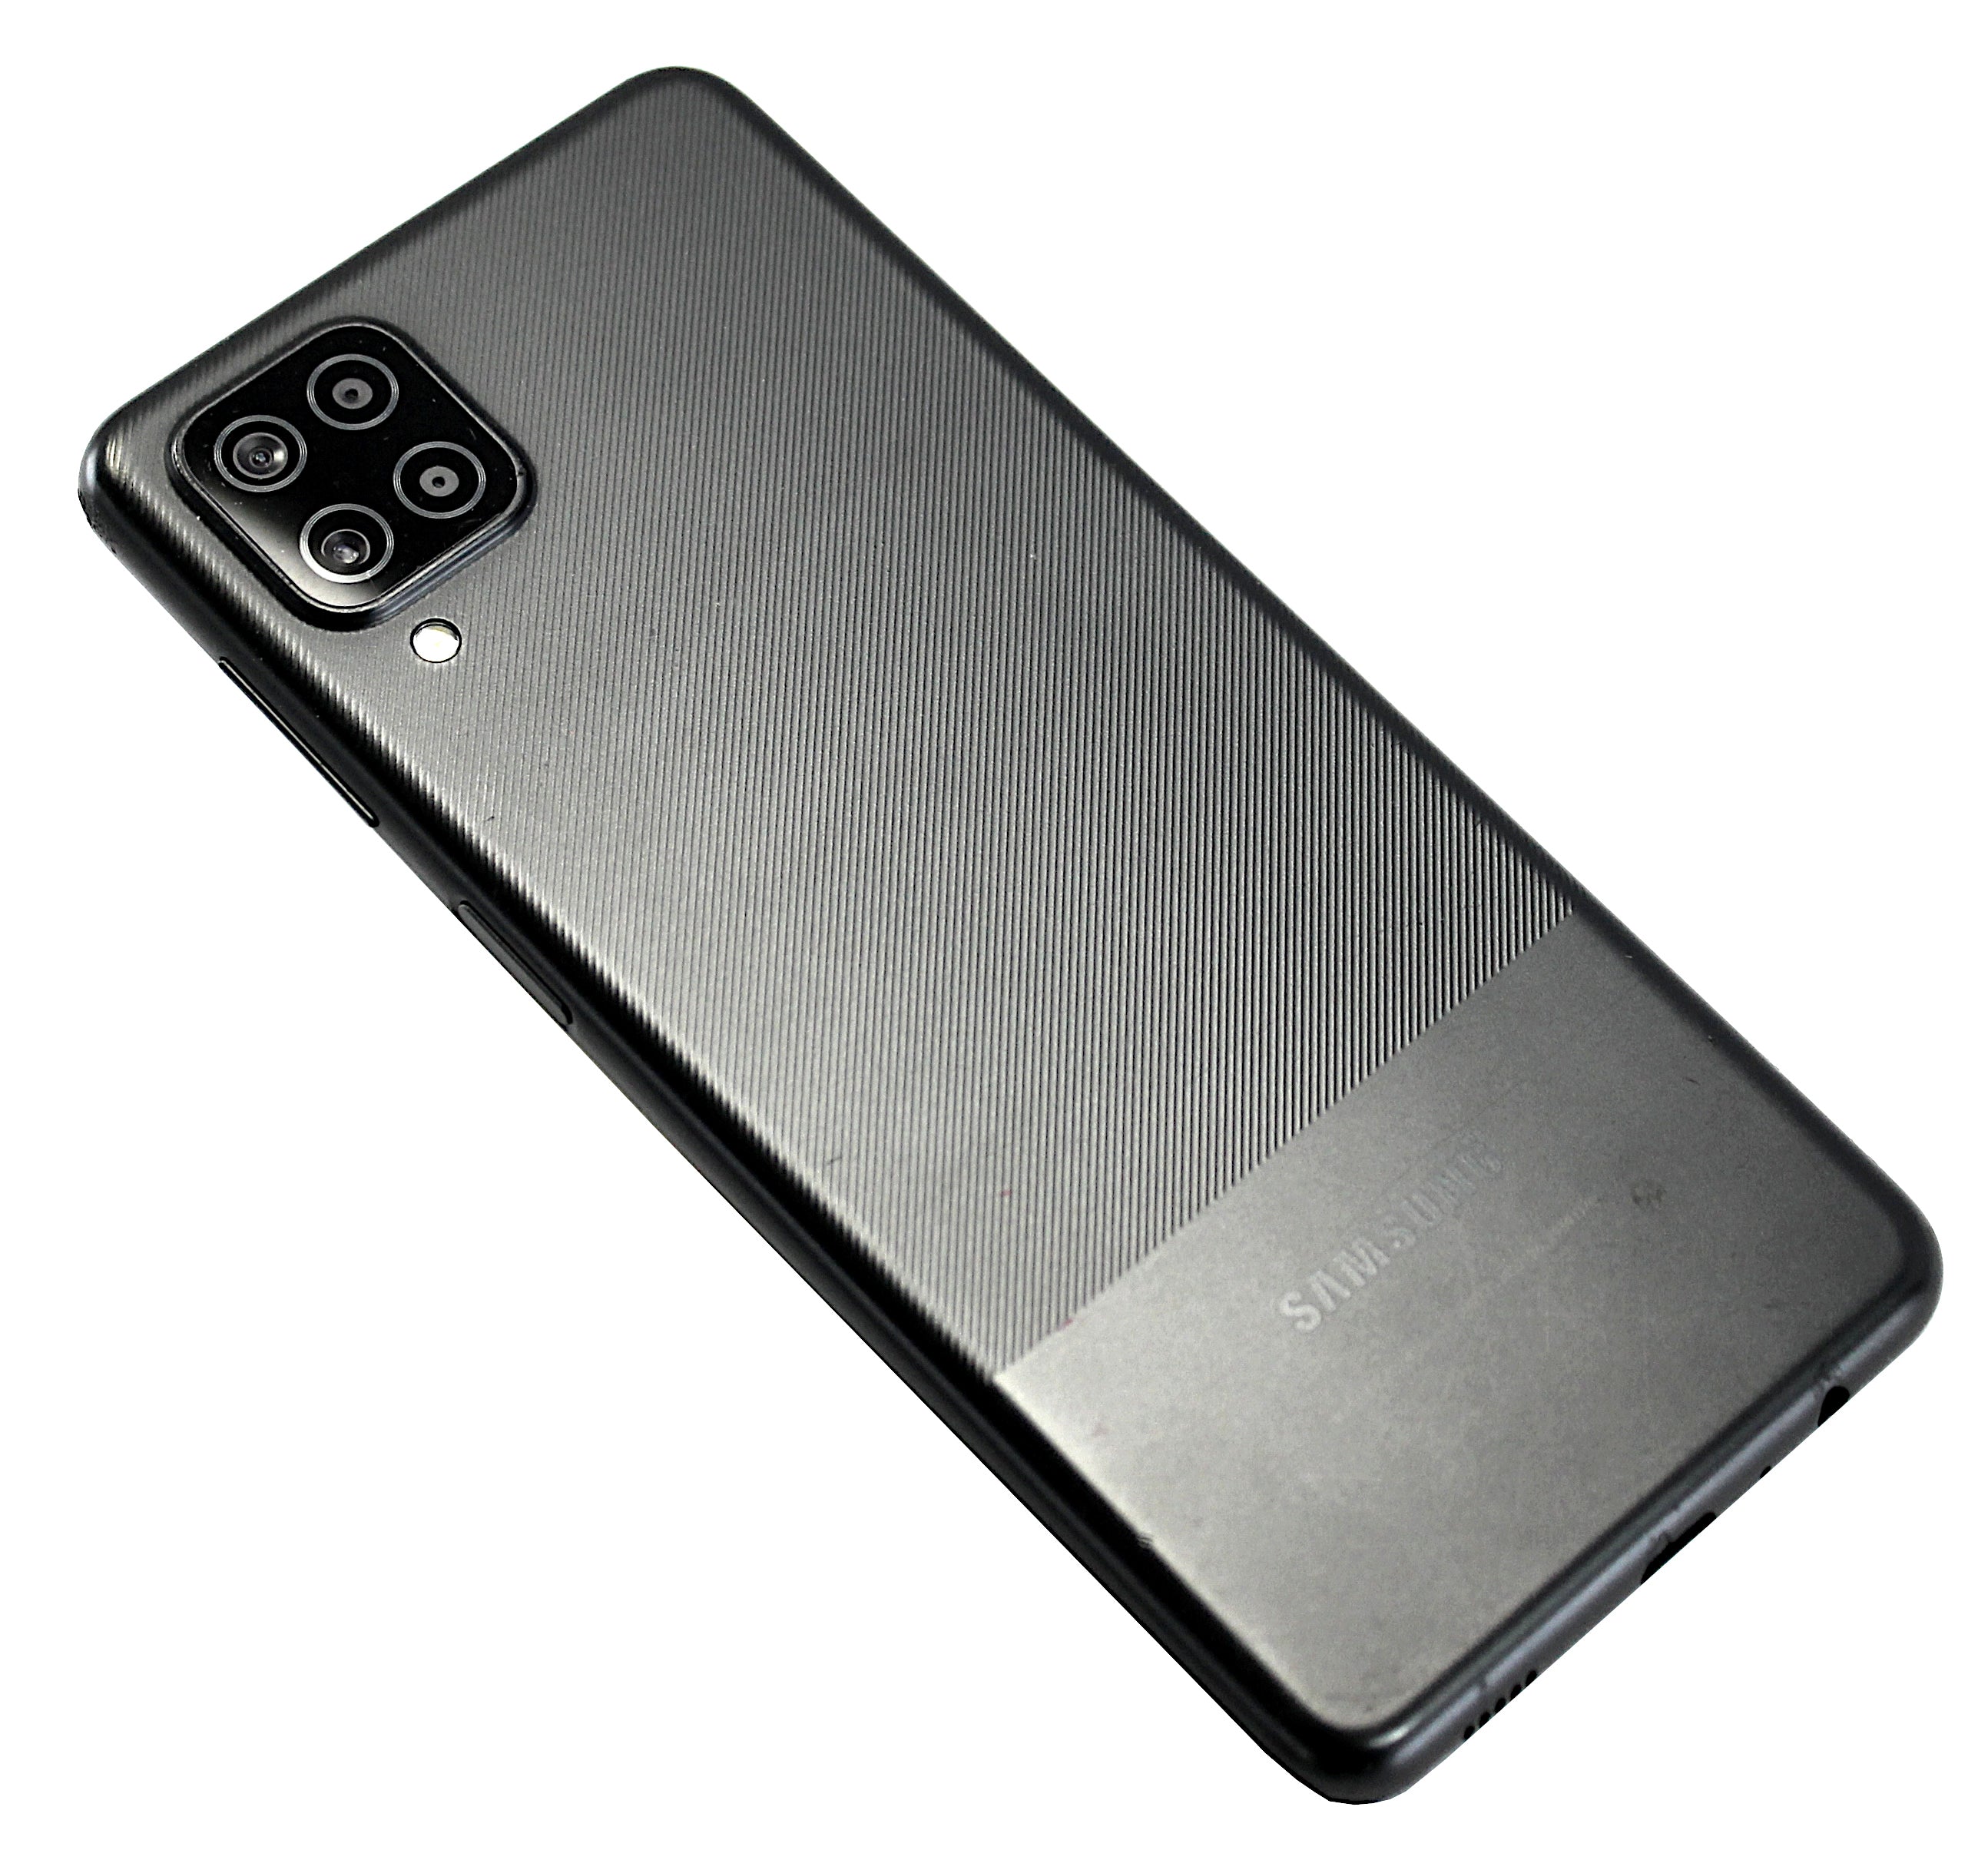 Samsung Galaxy A12 Smartphone, 64GB, Network Unlocked, Black, SM-A125F